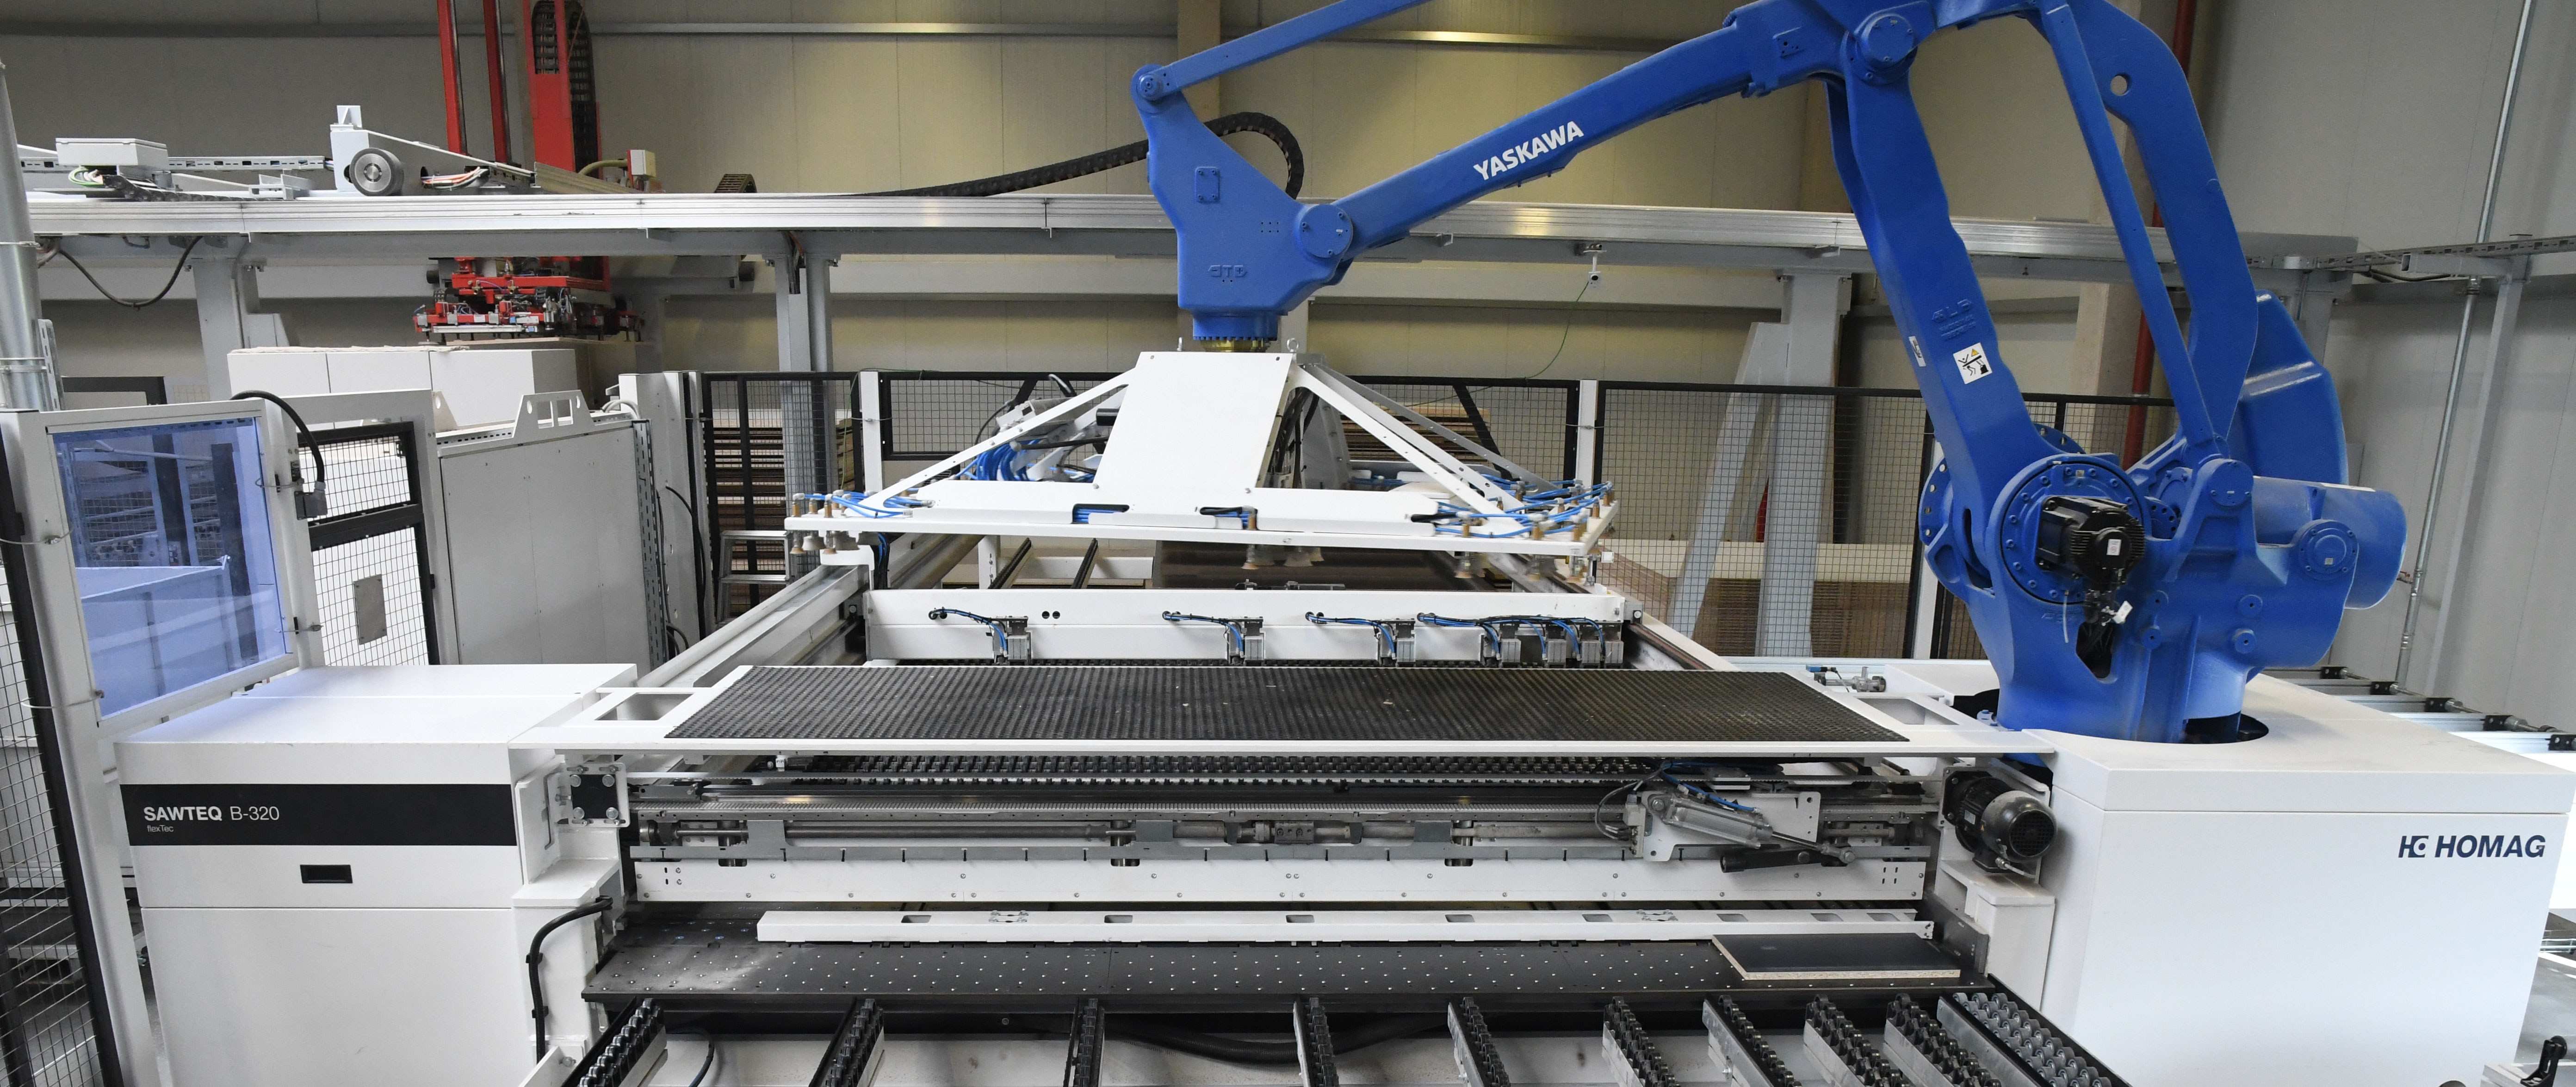 Раскрой при изготовлении индивидуальной продукции на производстве horatec почти полностью выполняется двумя роботизированными пильными центрами HOMAG типа SAWTEQ B-320 ﬂexTec.